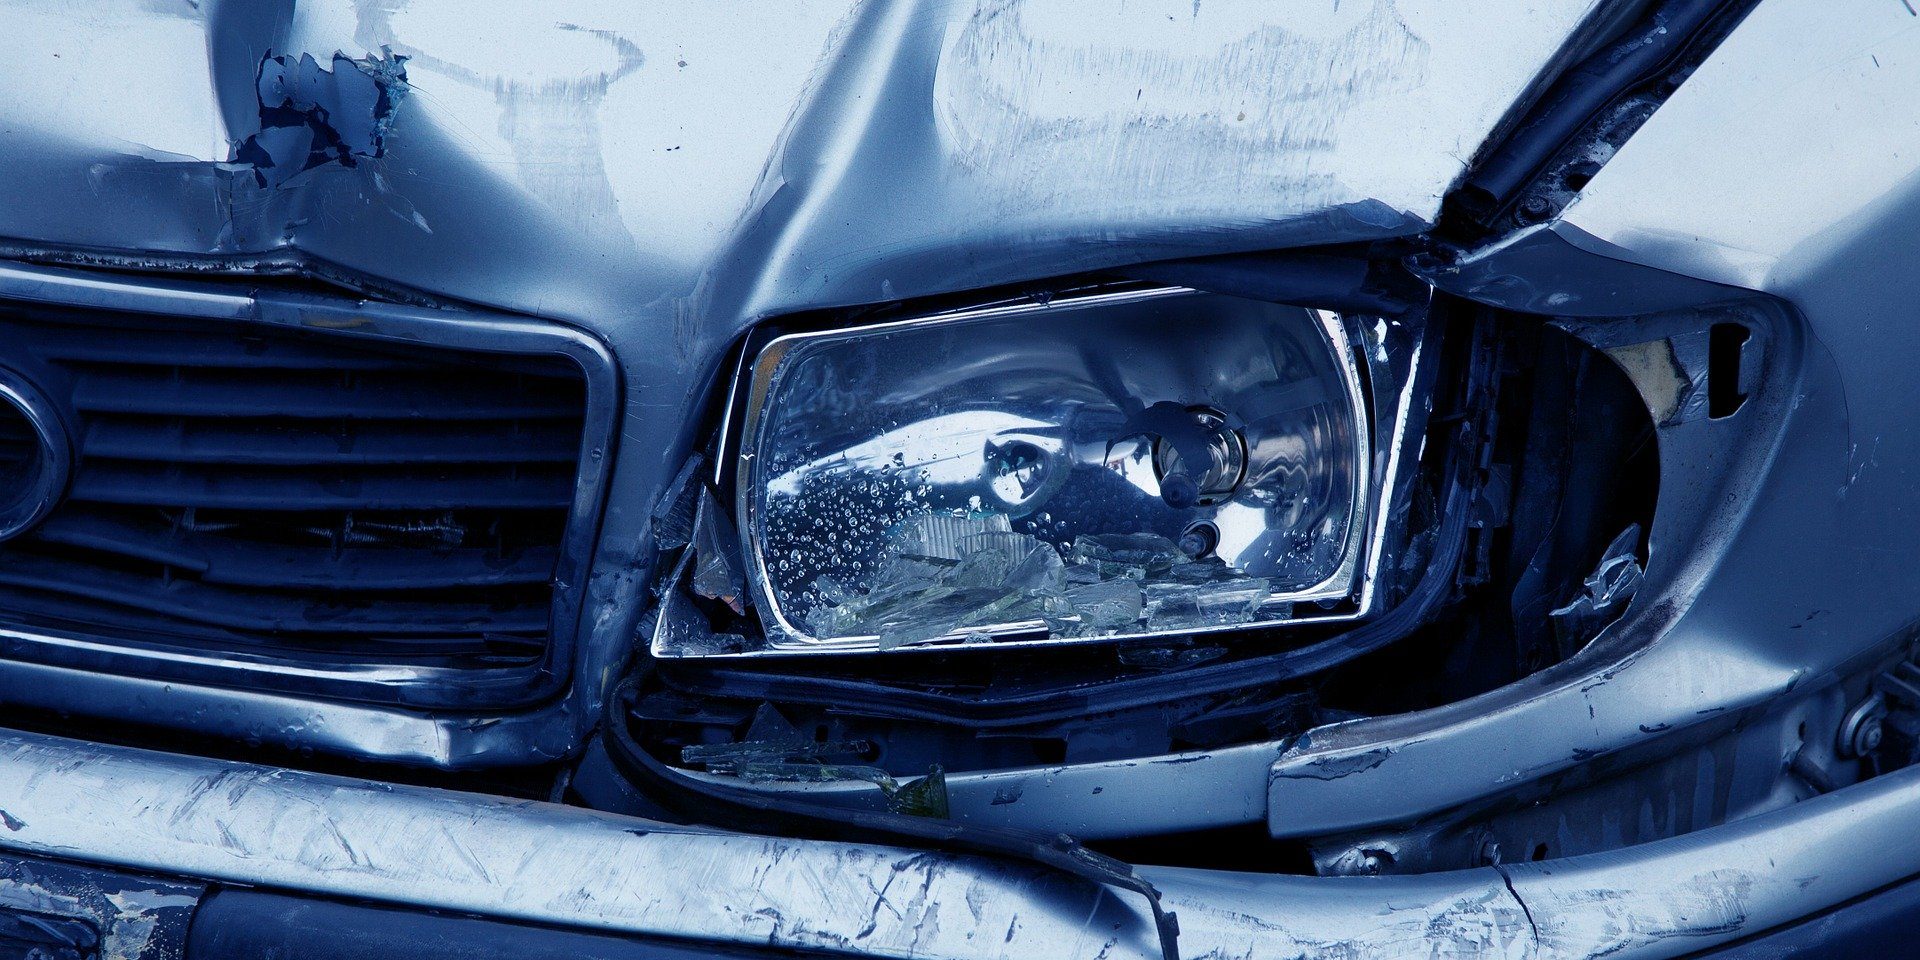 ¿Los requisitos de educación del conductor de Lax contribuyen a la alta tasa de accidentes automovilísticos de Carolina del Sur? | Abogados de Lesiones en Carolina del Sur | Bufete de abogados Steinberg